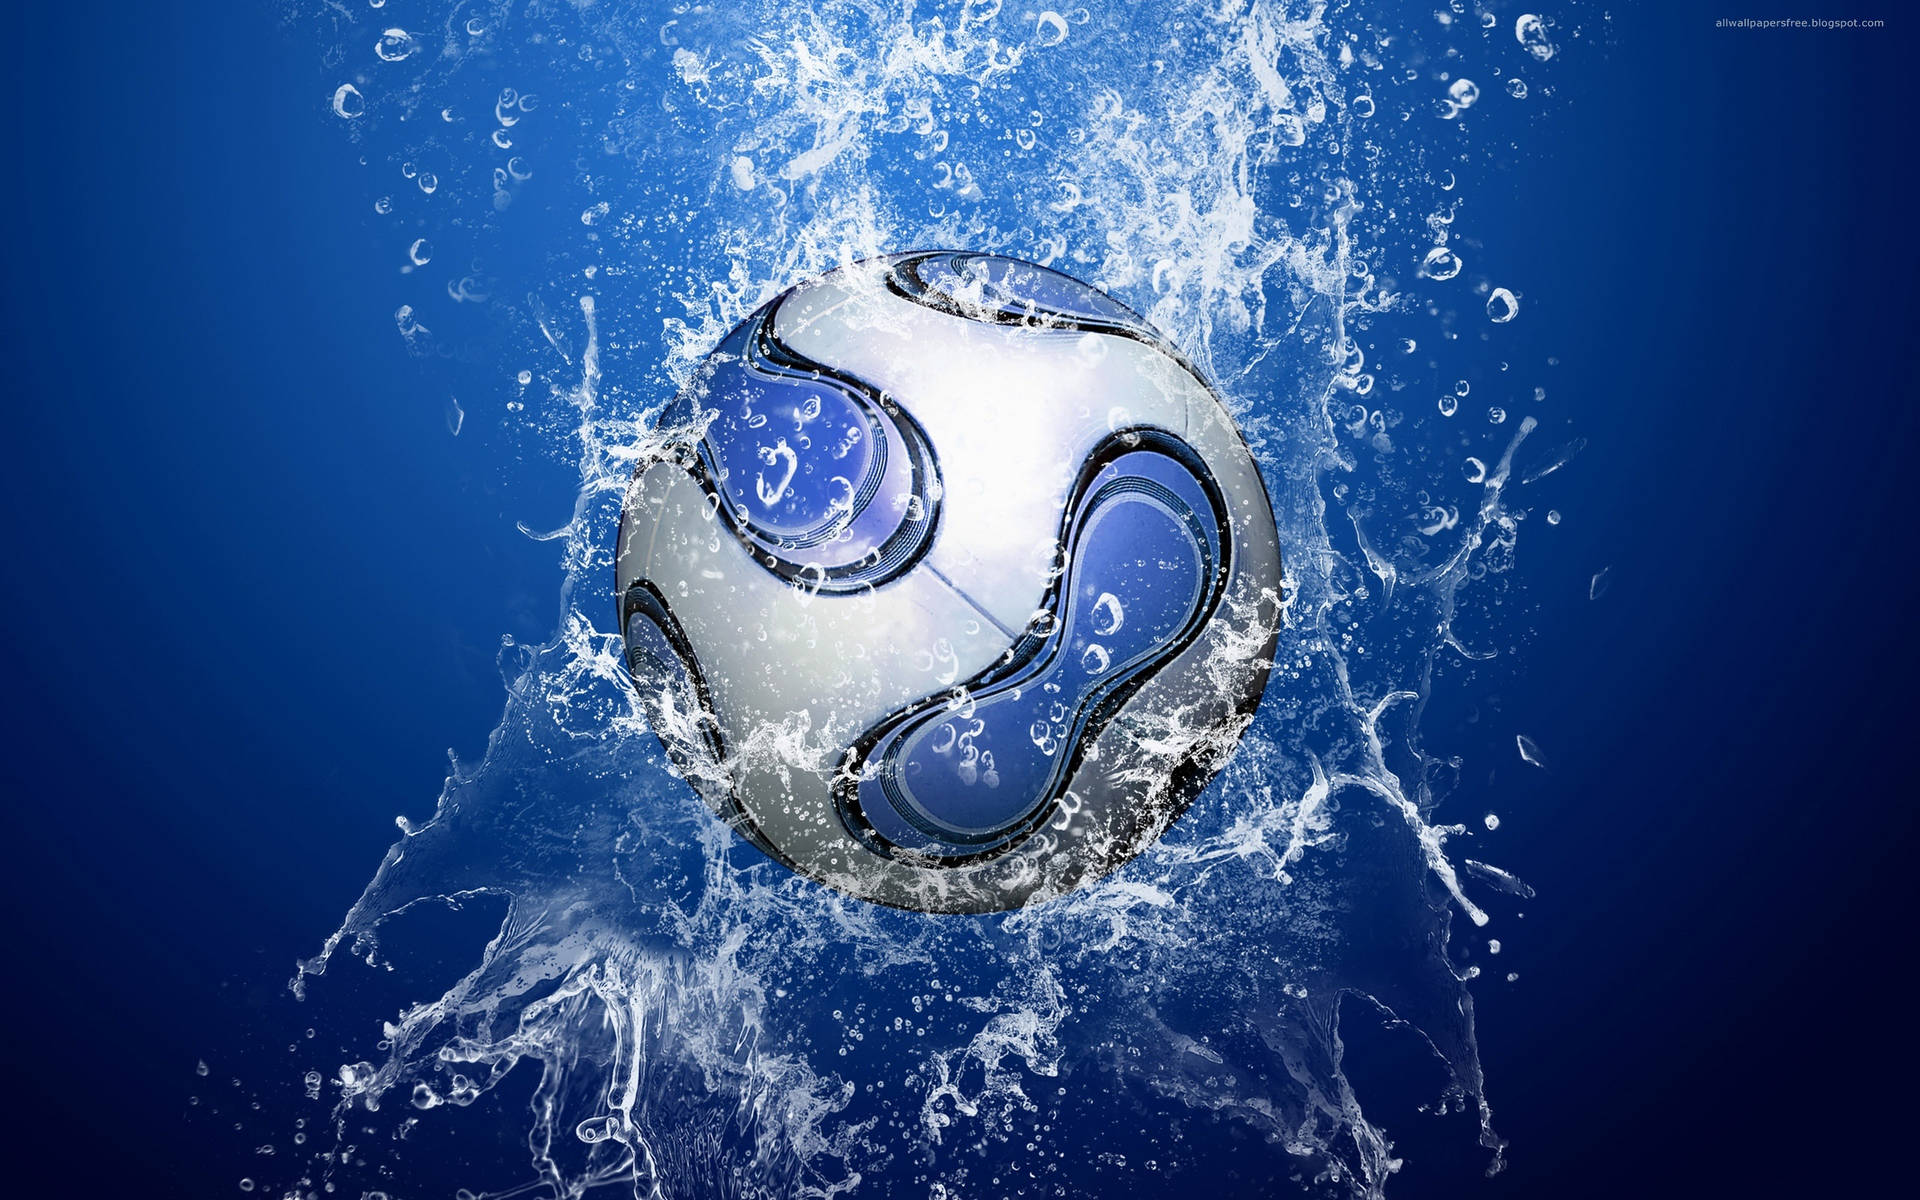 Cool Soccer Ball Water Effect Wallpaper